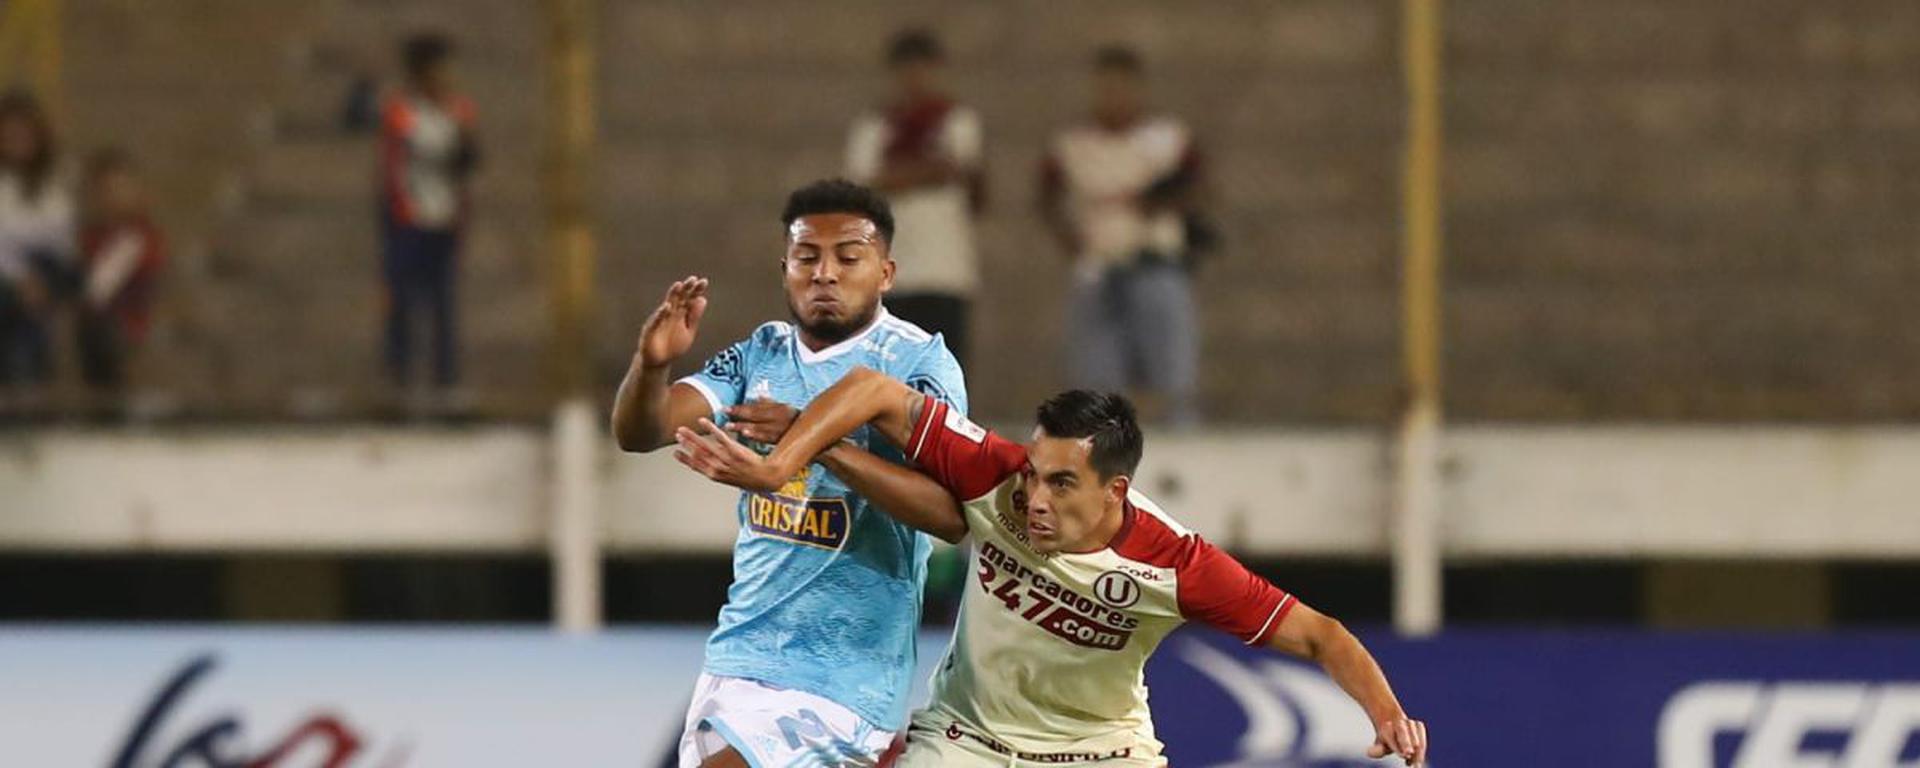 Las reformas del fútbol peruano en debate: posturas sobre los cambios anunciados por la FPF